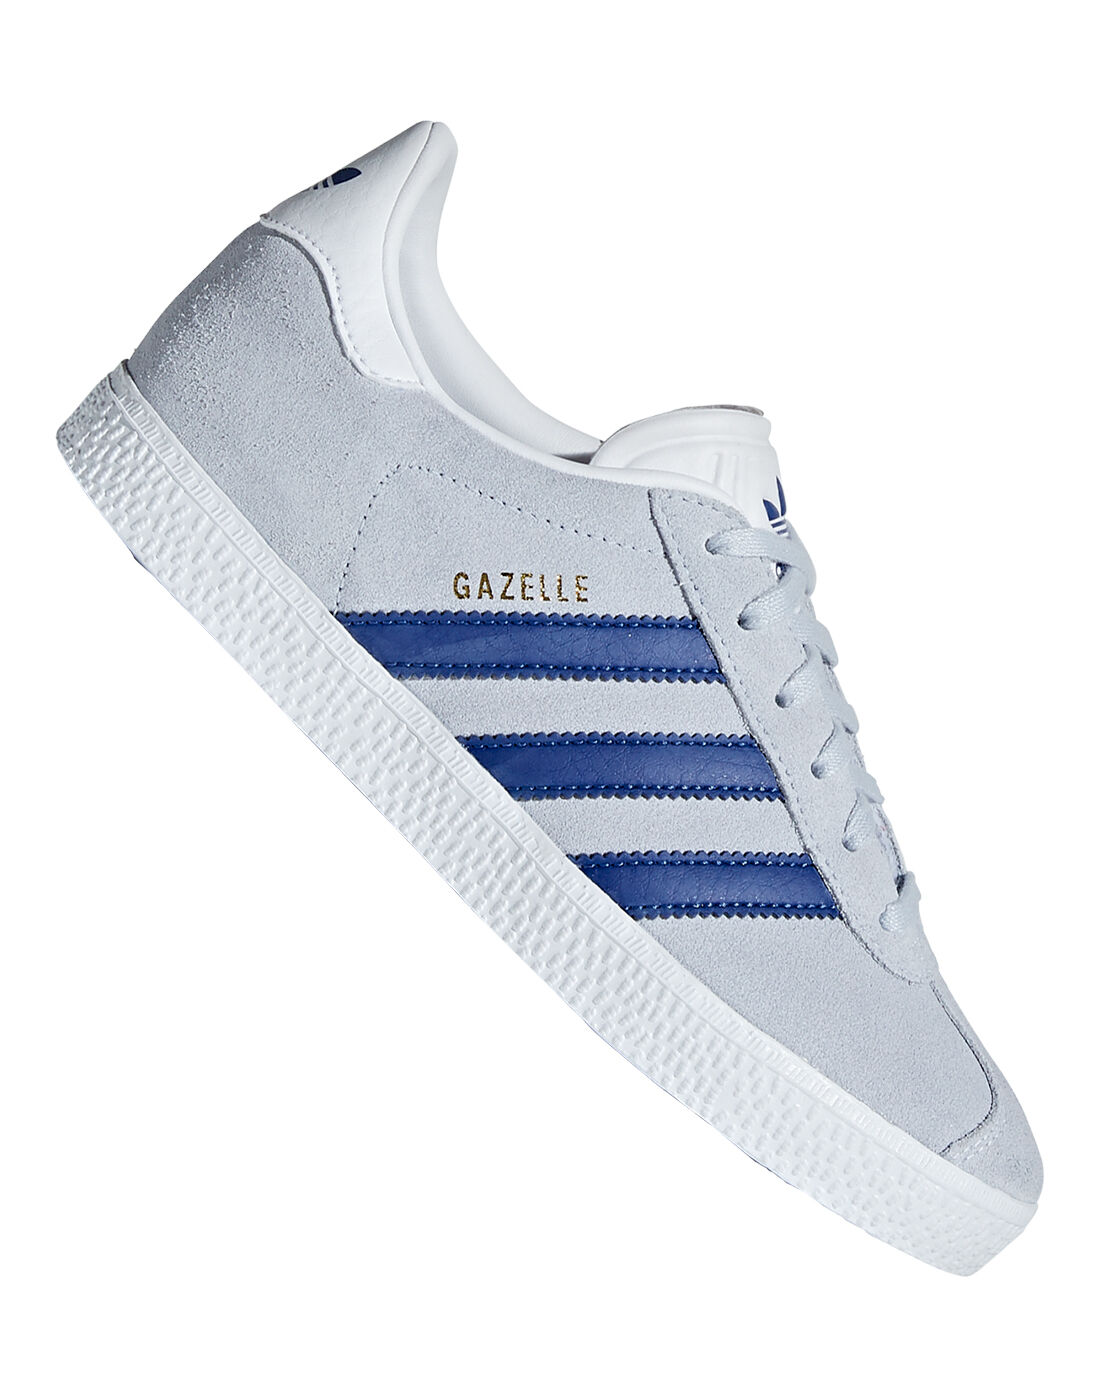 adidas gazelle grey and blue